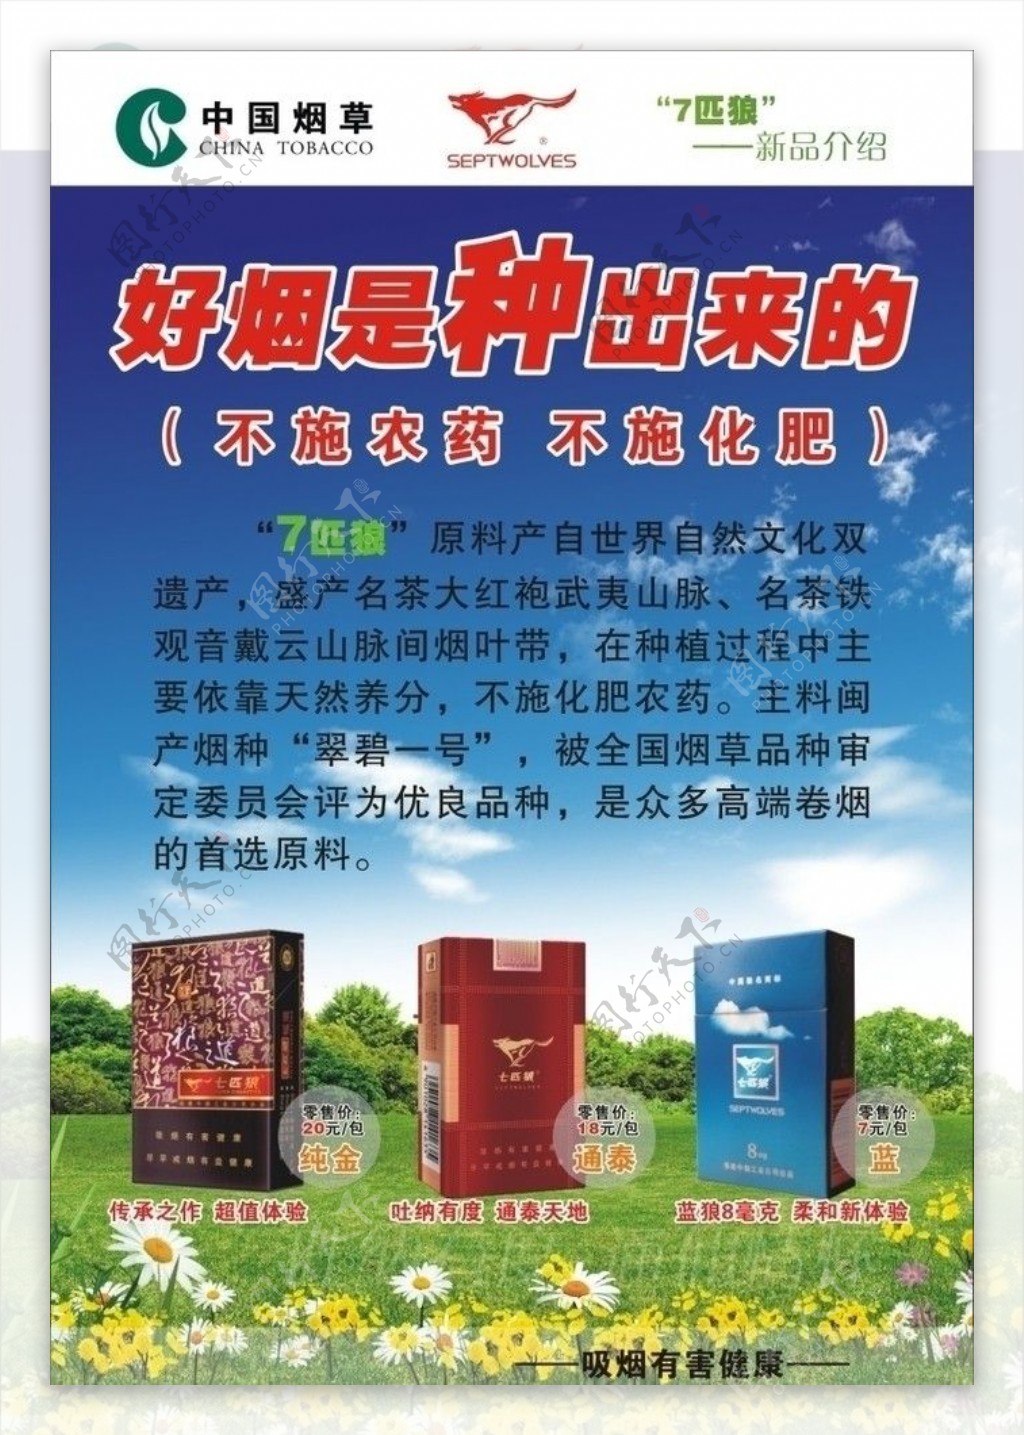 中国烟草公司宣传广告设计图片